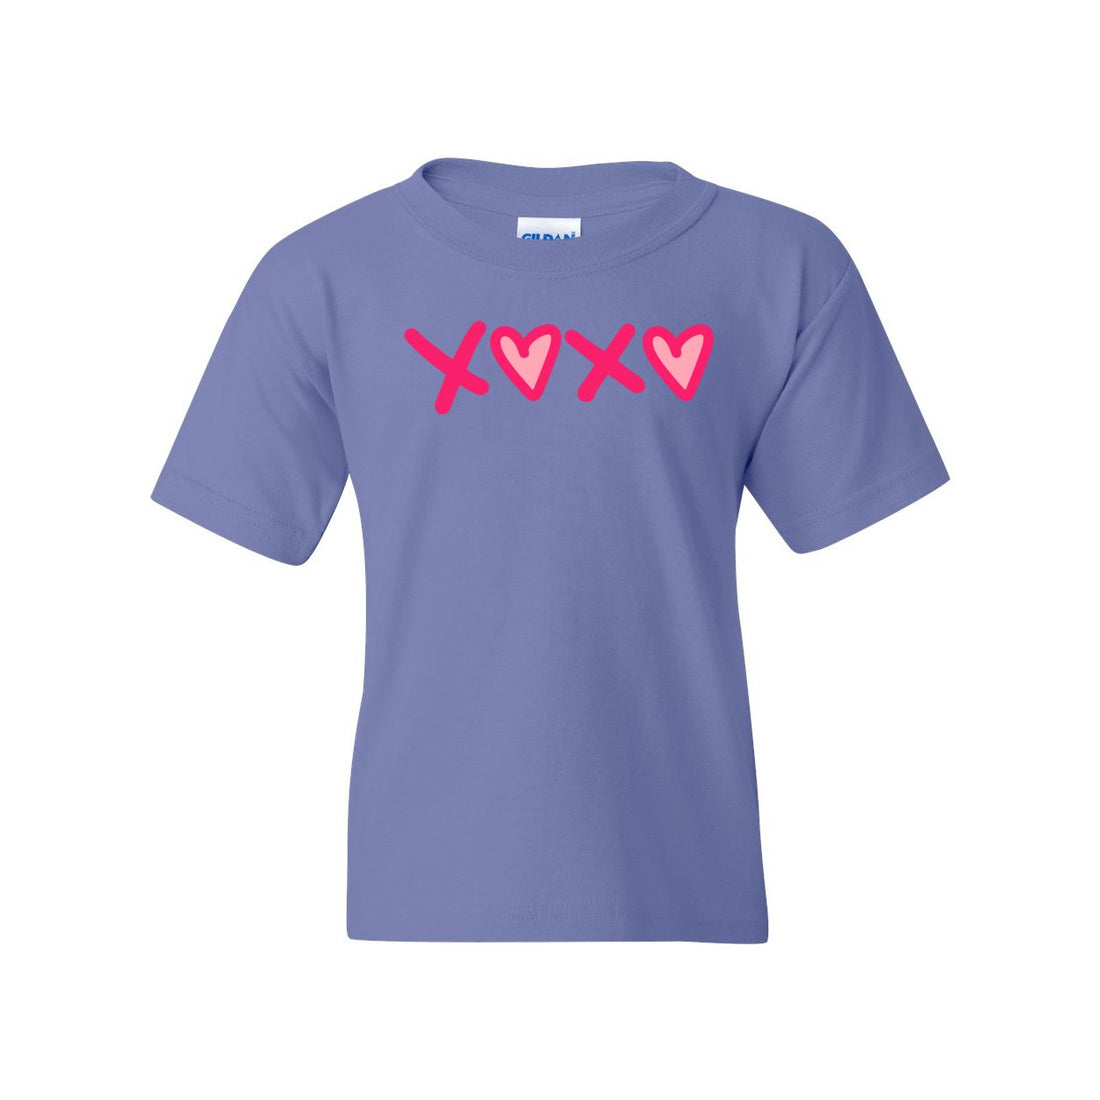 XOXO Heart Love Heavy Cotton™ Youth T-Shirt - T-Shirts - Positively Sassy - XOXO Heart Love Heavy Cotton™ Youth T-Shirt